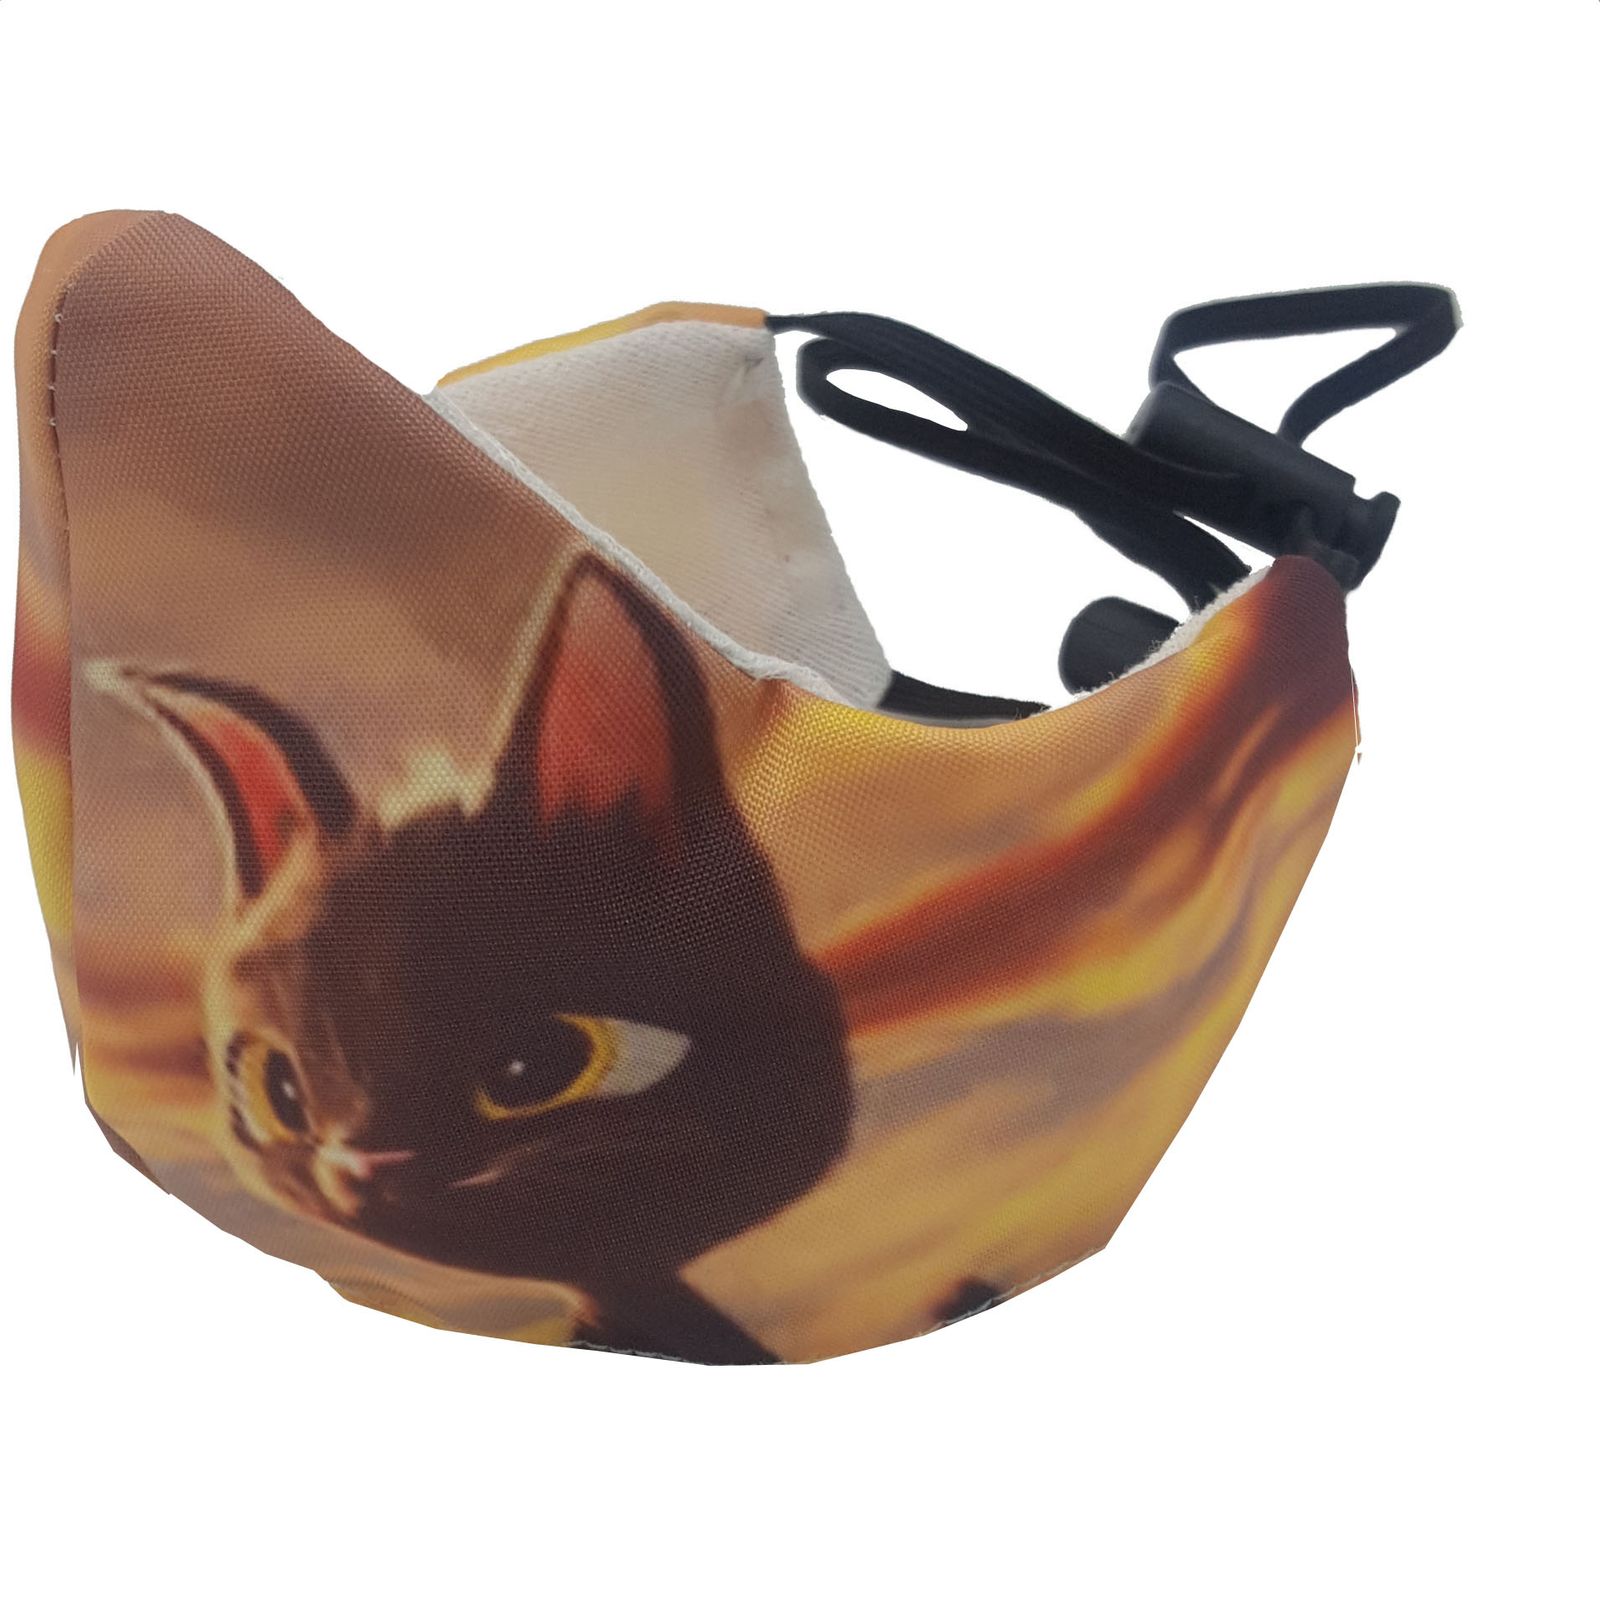 ماسک تزیینی بچگانه کالای ورزشی پروین مدل گربه -  - 1